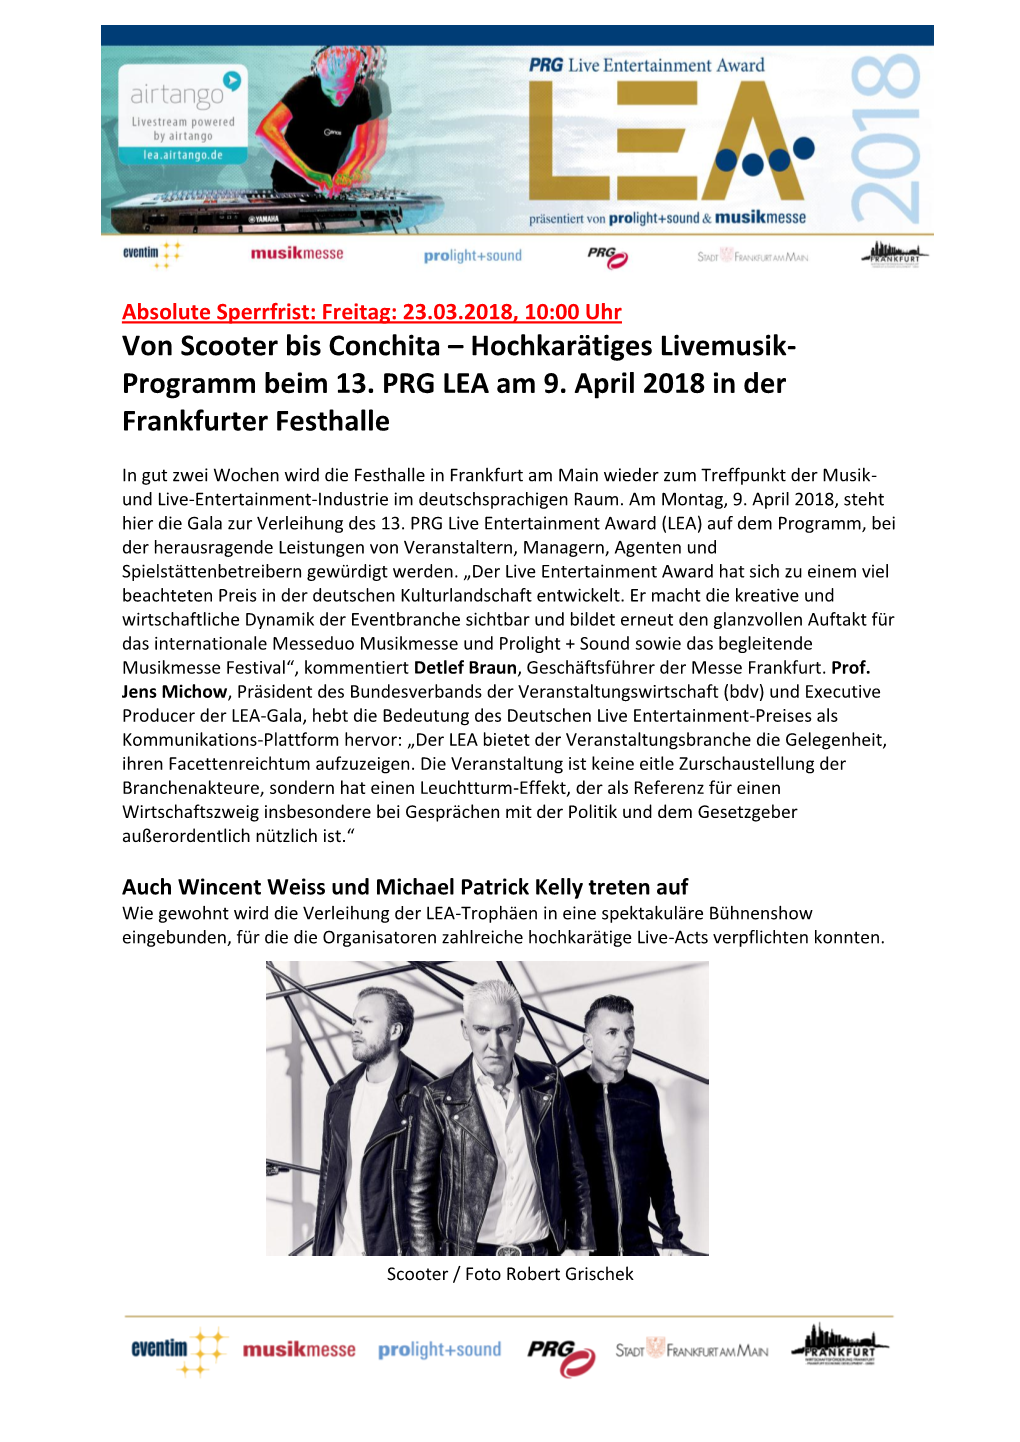 Programm Beim 13. PRG LEA Am 9. April 2018 in Der Frankfurter Festhalle